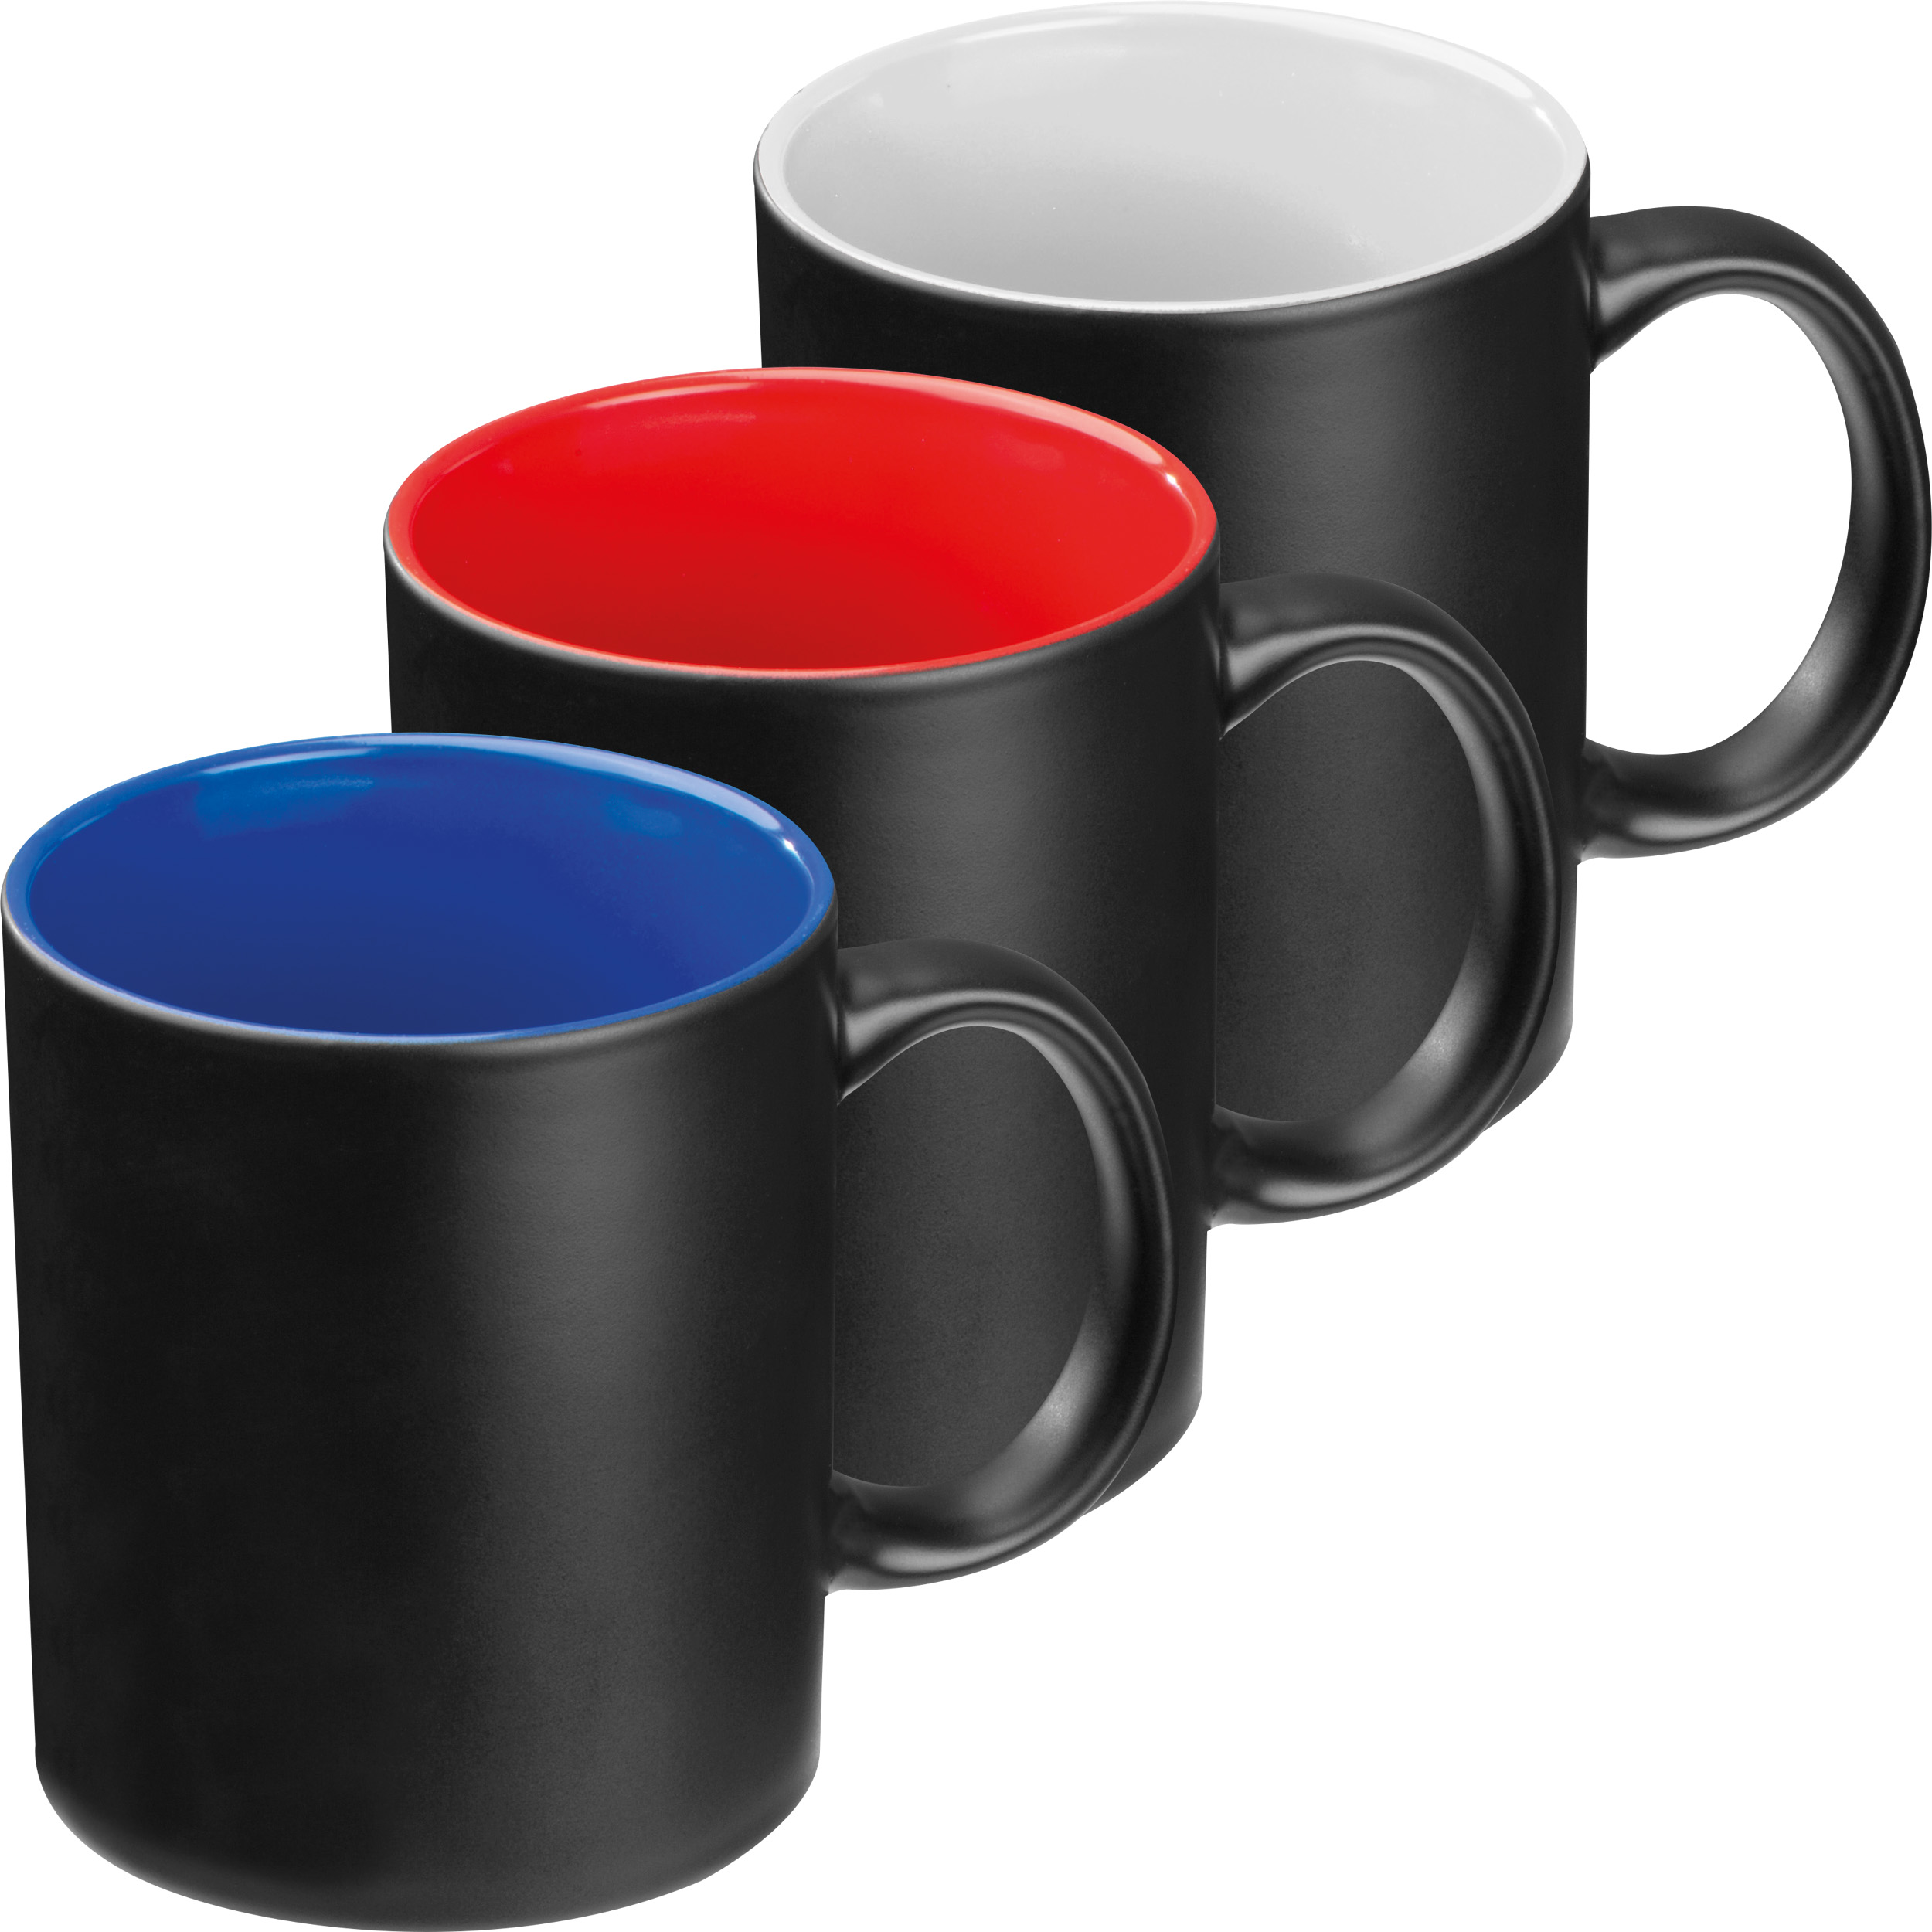 tasse avec extérieur noir et intérieur coloré